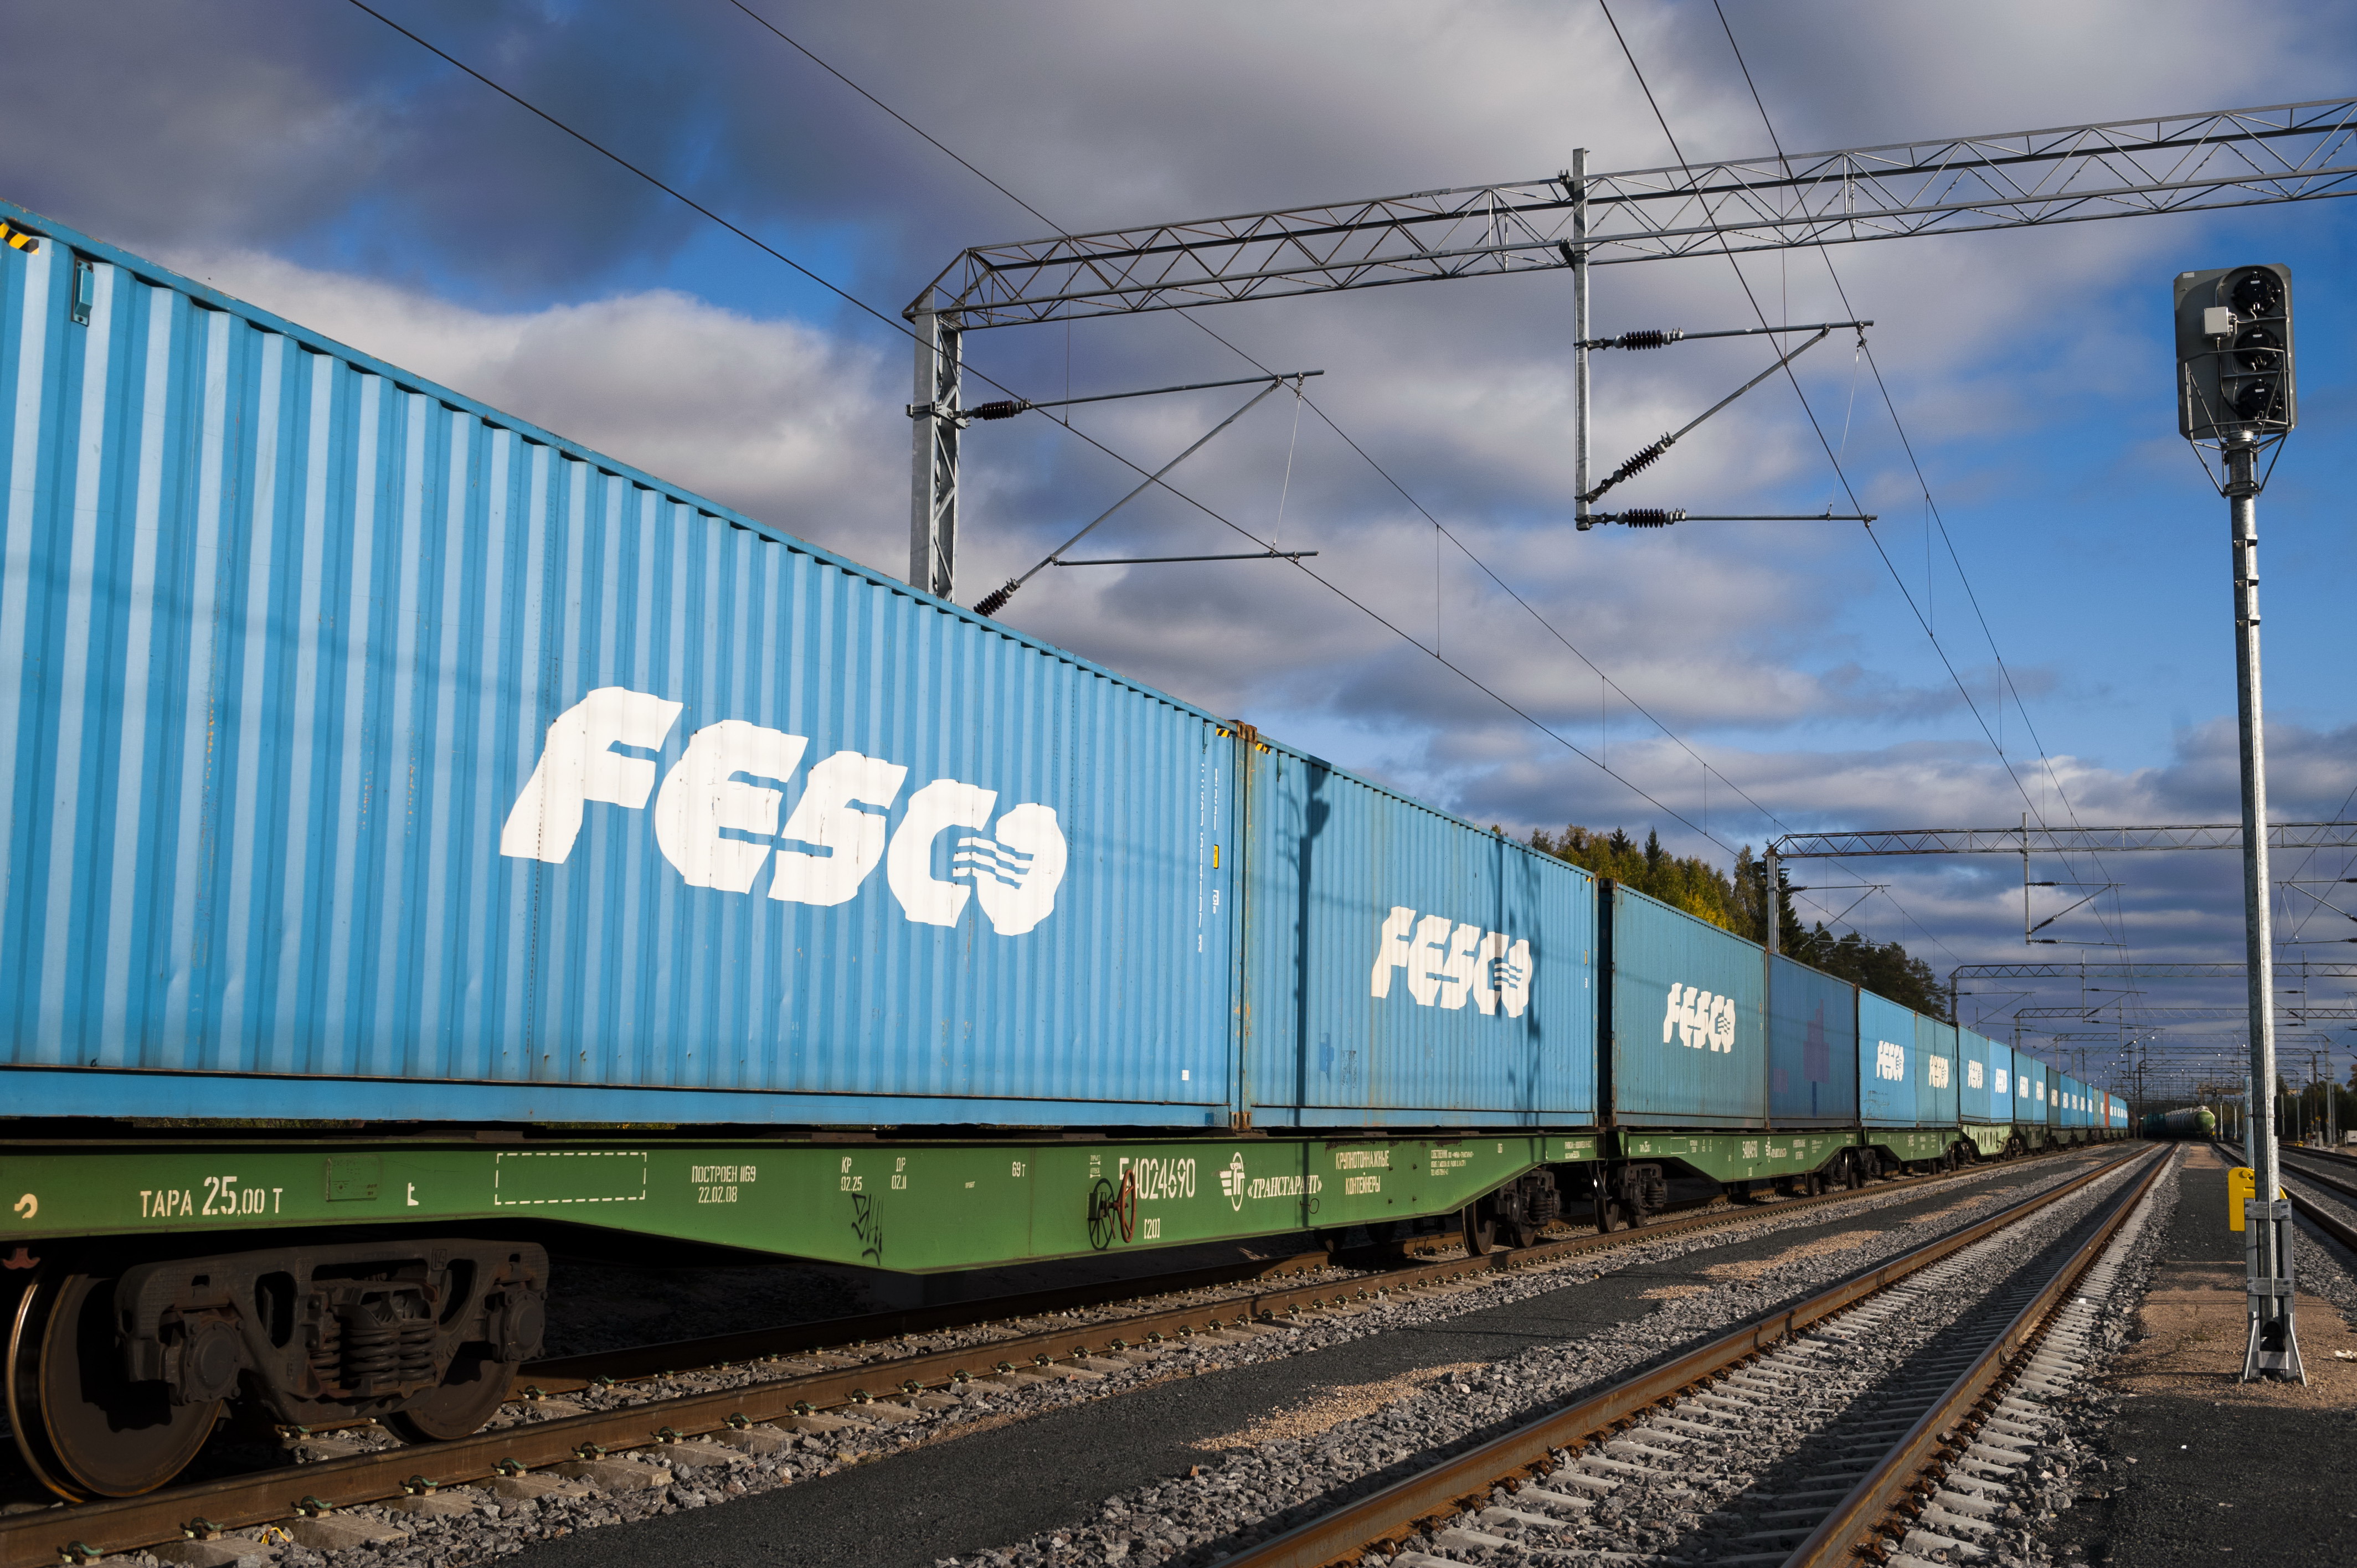 FESCO доставила первую партию оборудования по контракту с Great Wall, организовав новый поезд Китай-Россия через Монголию